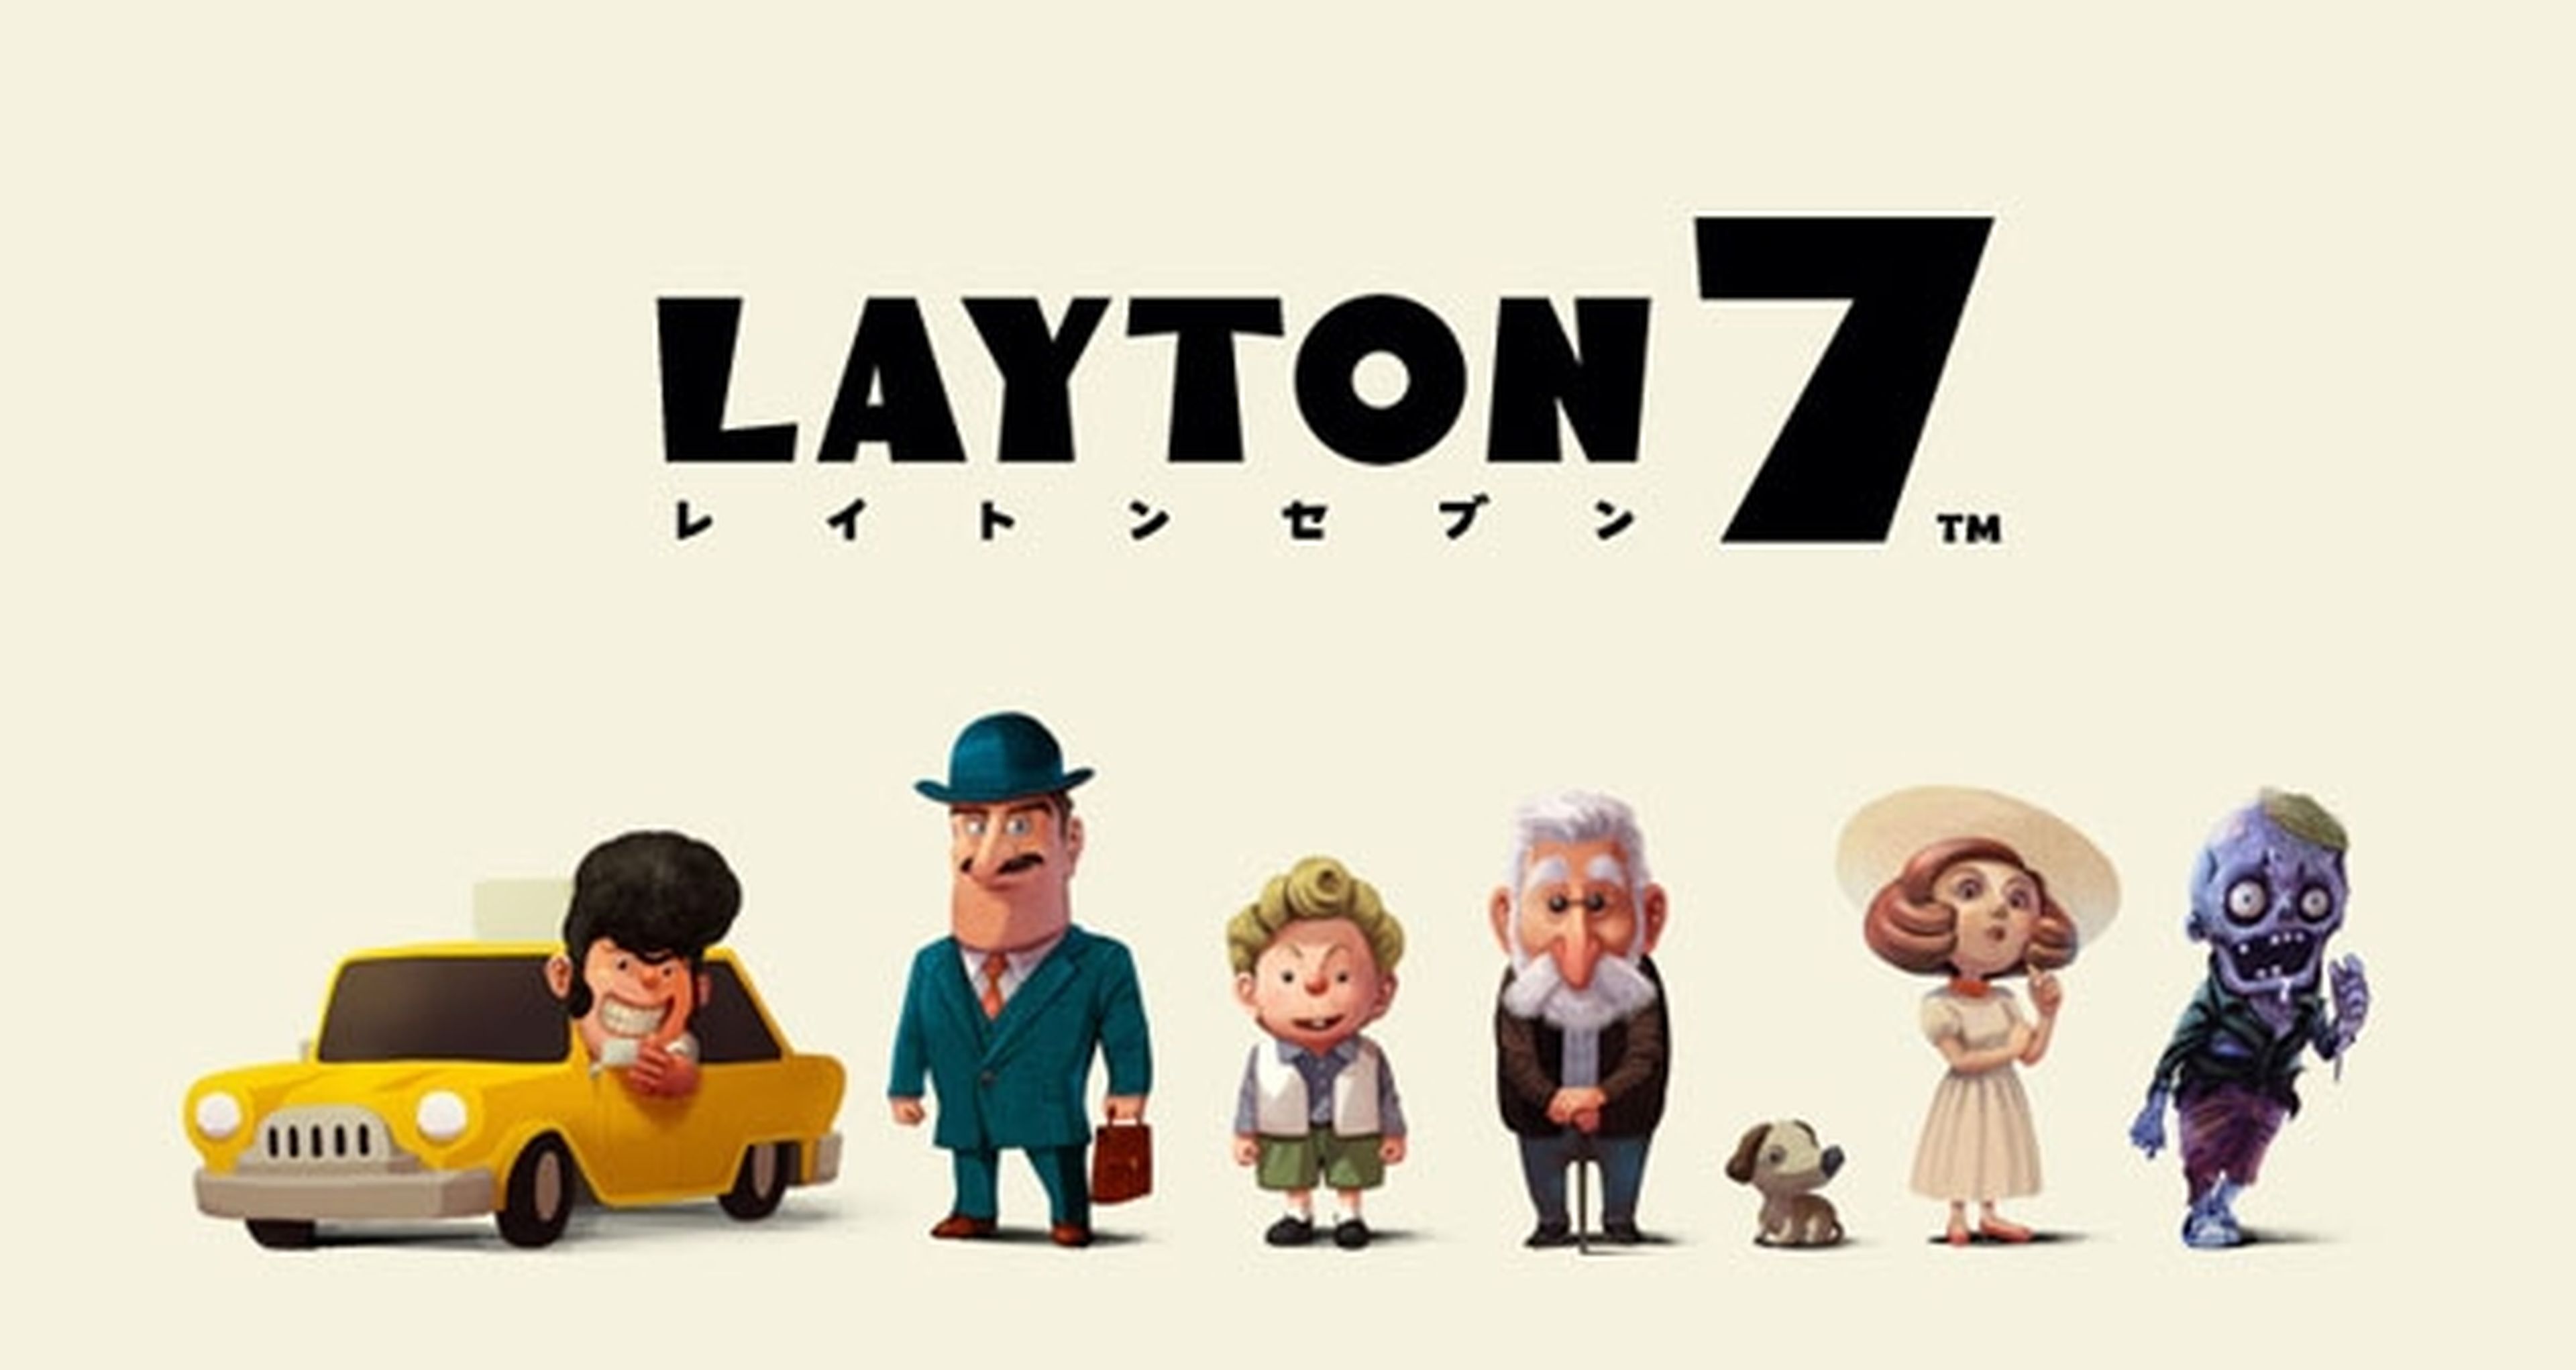 Level 5 presenta Layton 7